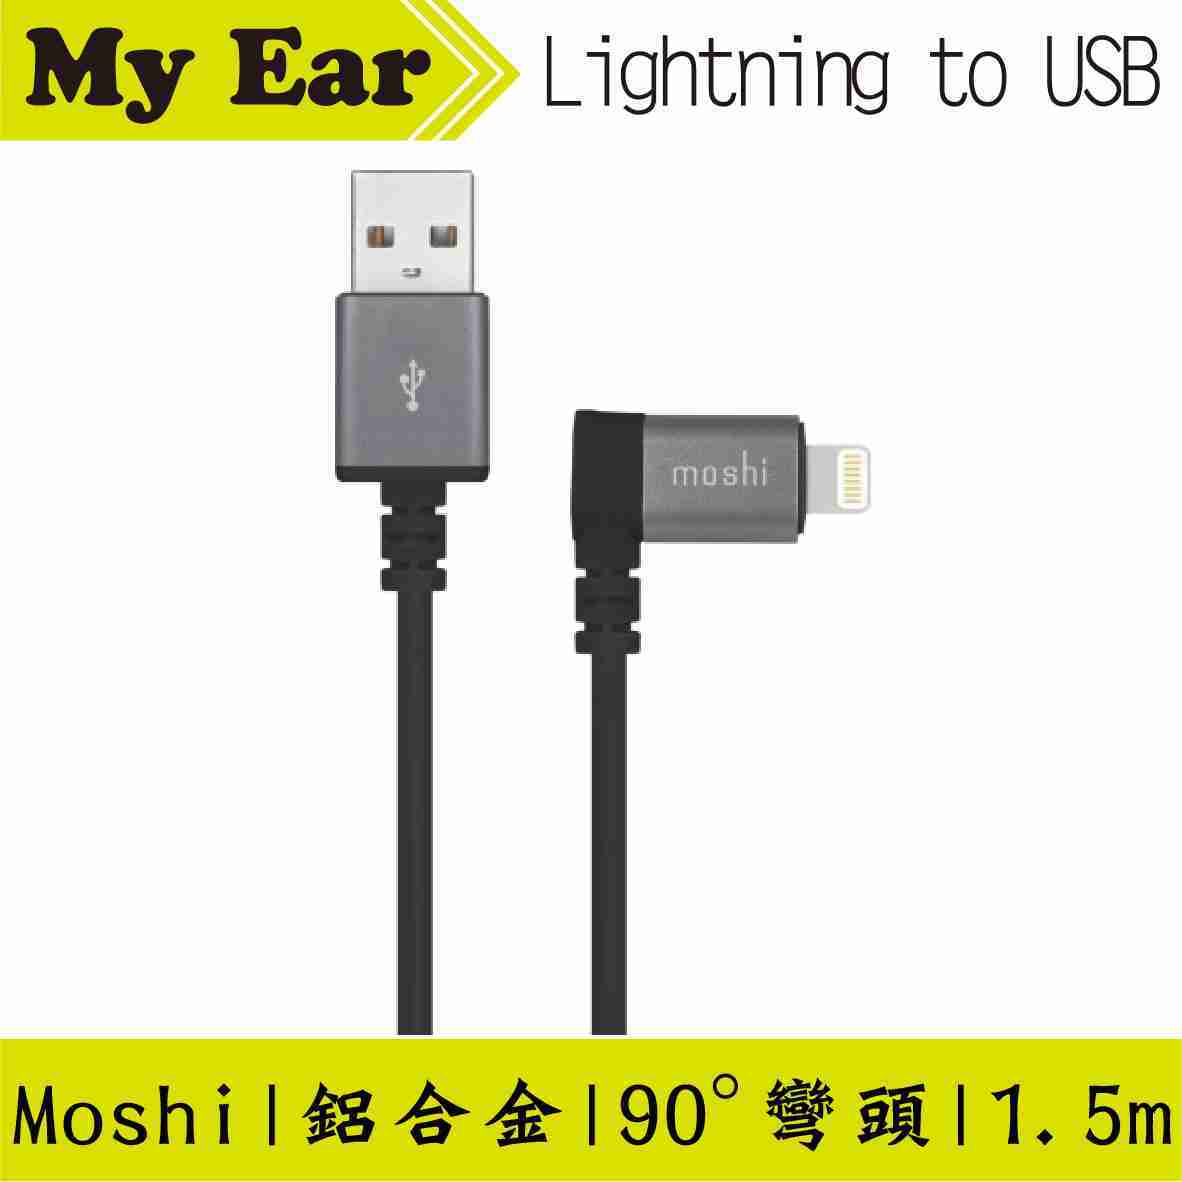 Moshi Lightning to USB 1.5m iPhone充電線彎頭 傳輸線 | MY Ear 耳機專門店